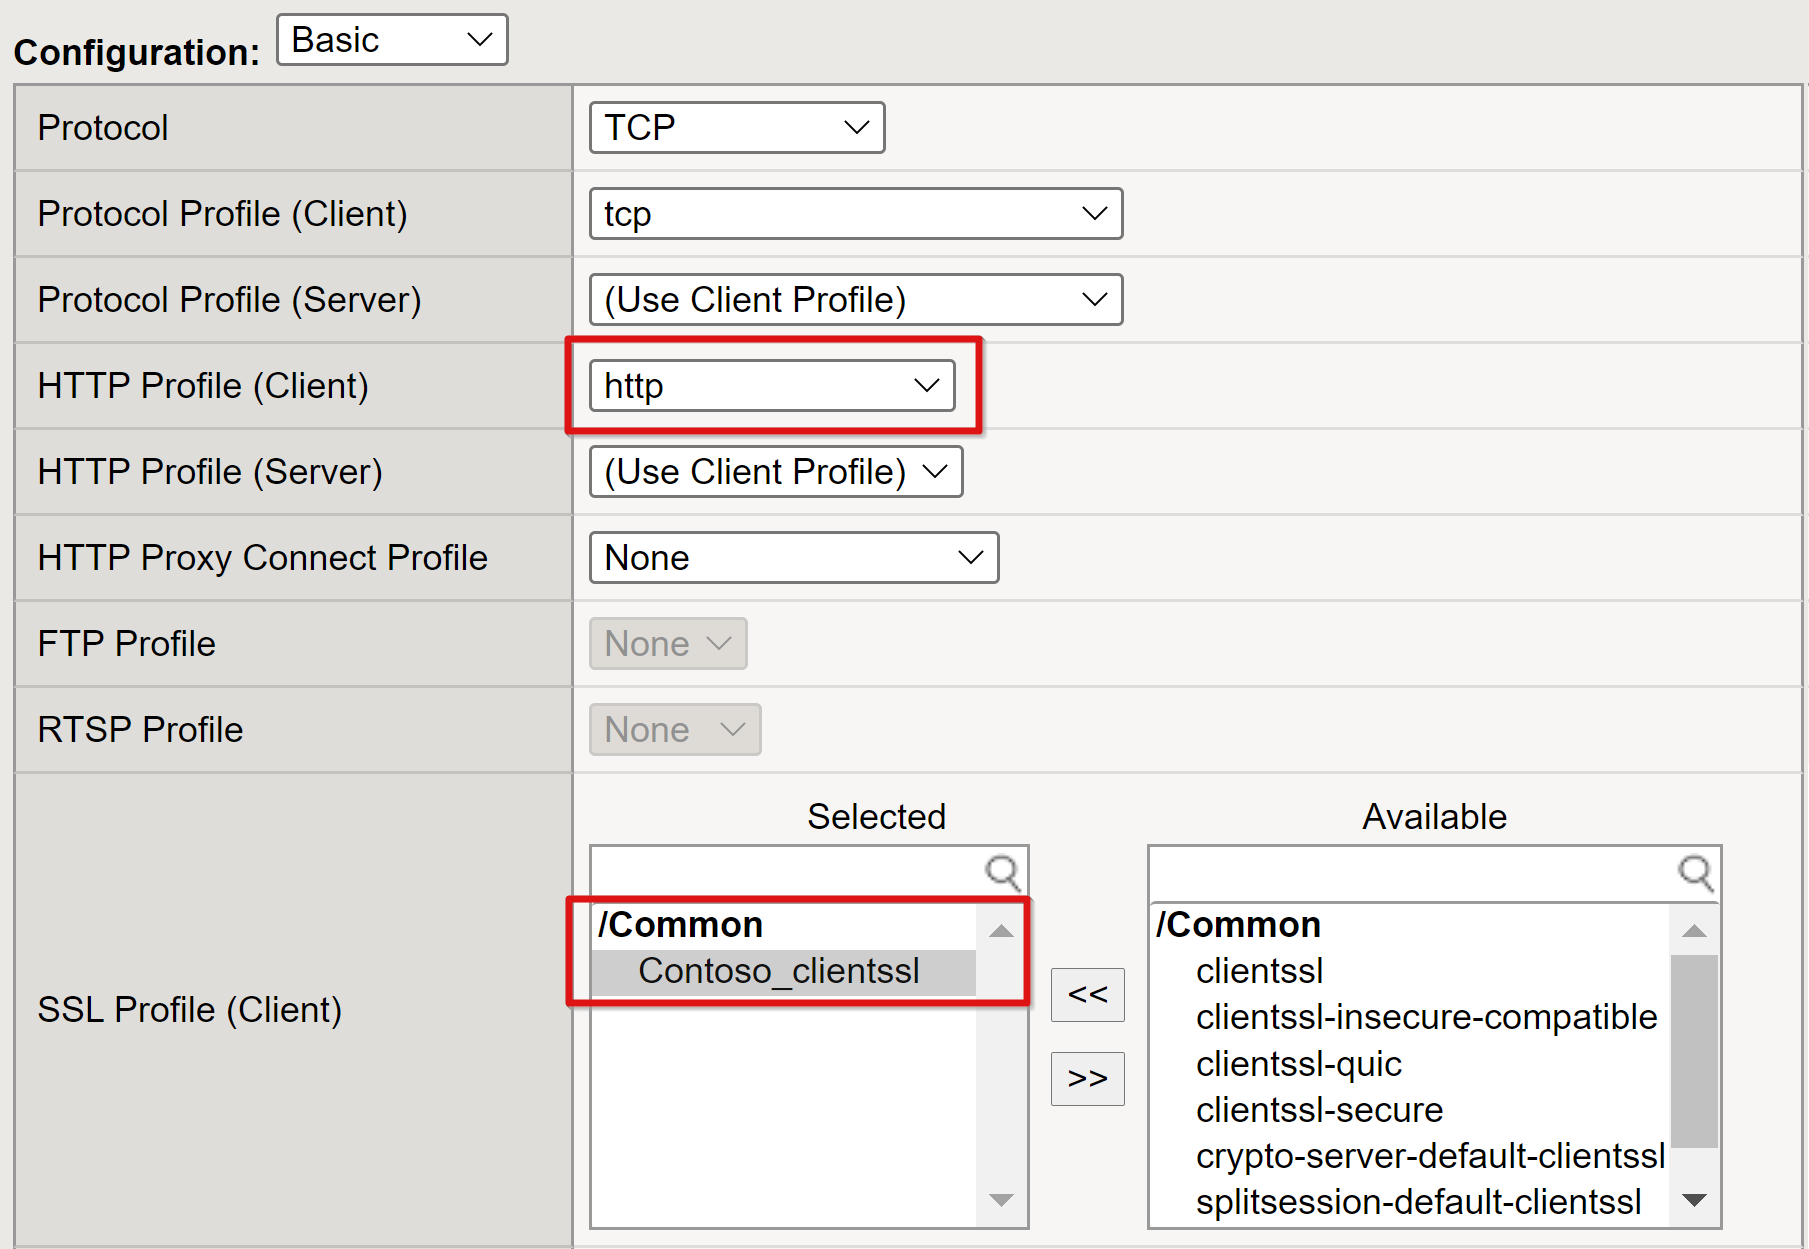 Captura de pantalla de la entrada de perfil HTTP para el cliente y las entradas seleccionadas del perfil SSL para el cliente.